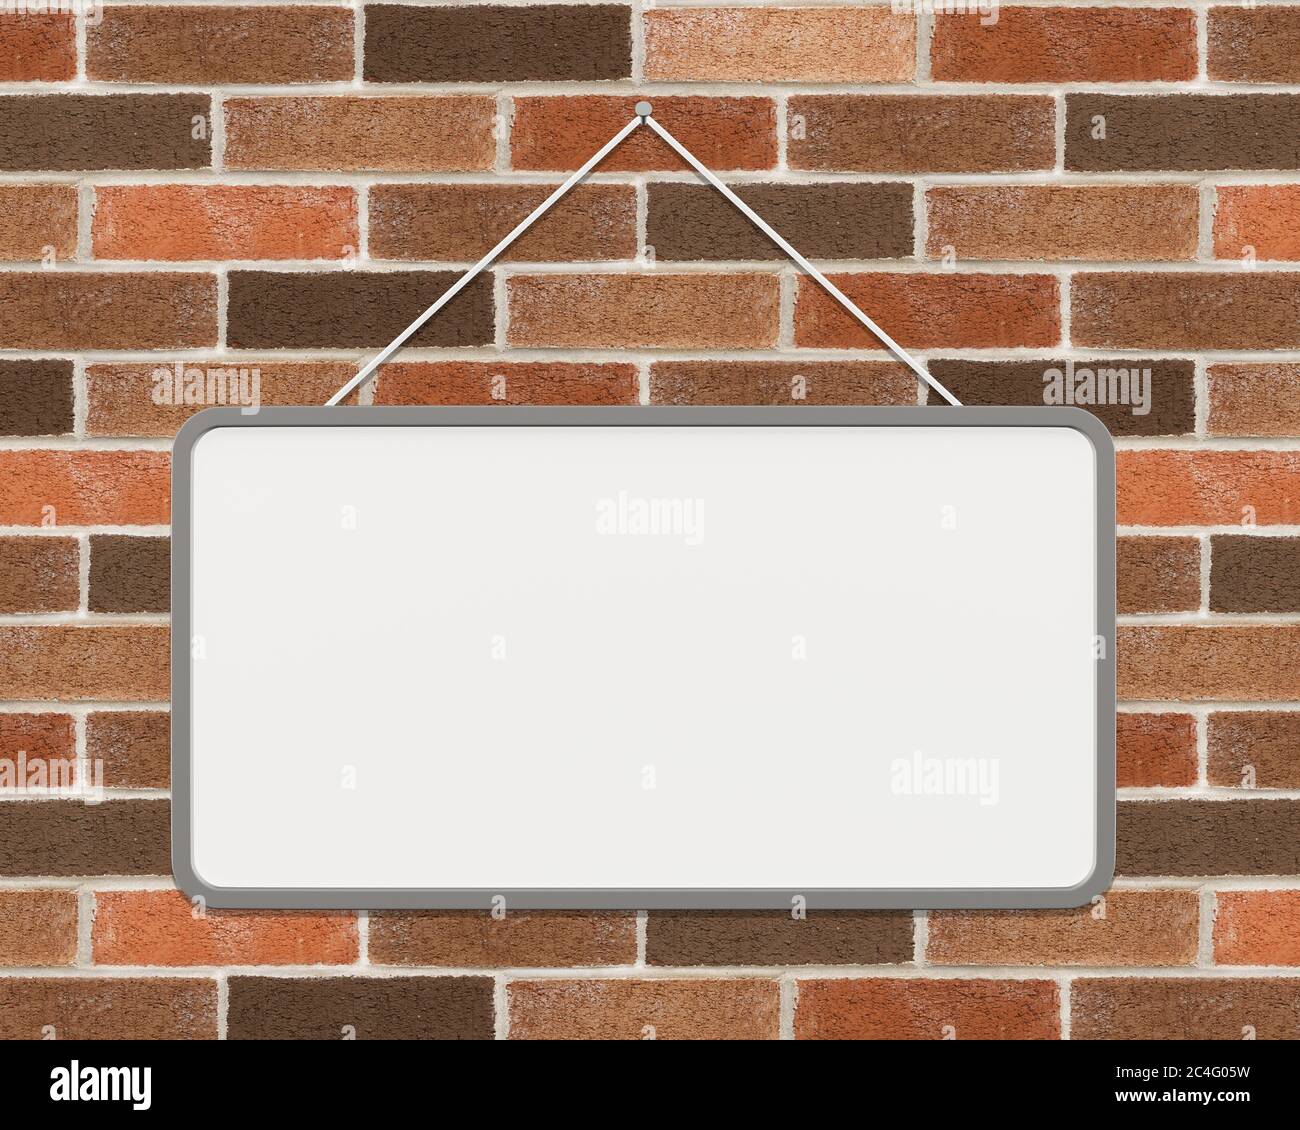 Leere weiße Tafel, die an einer Ziegelwand hängt Stockfotografie - Alamy